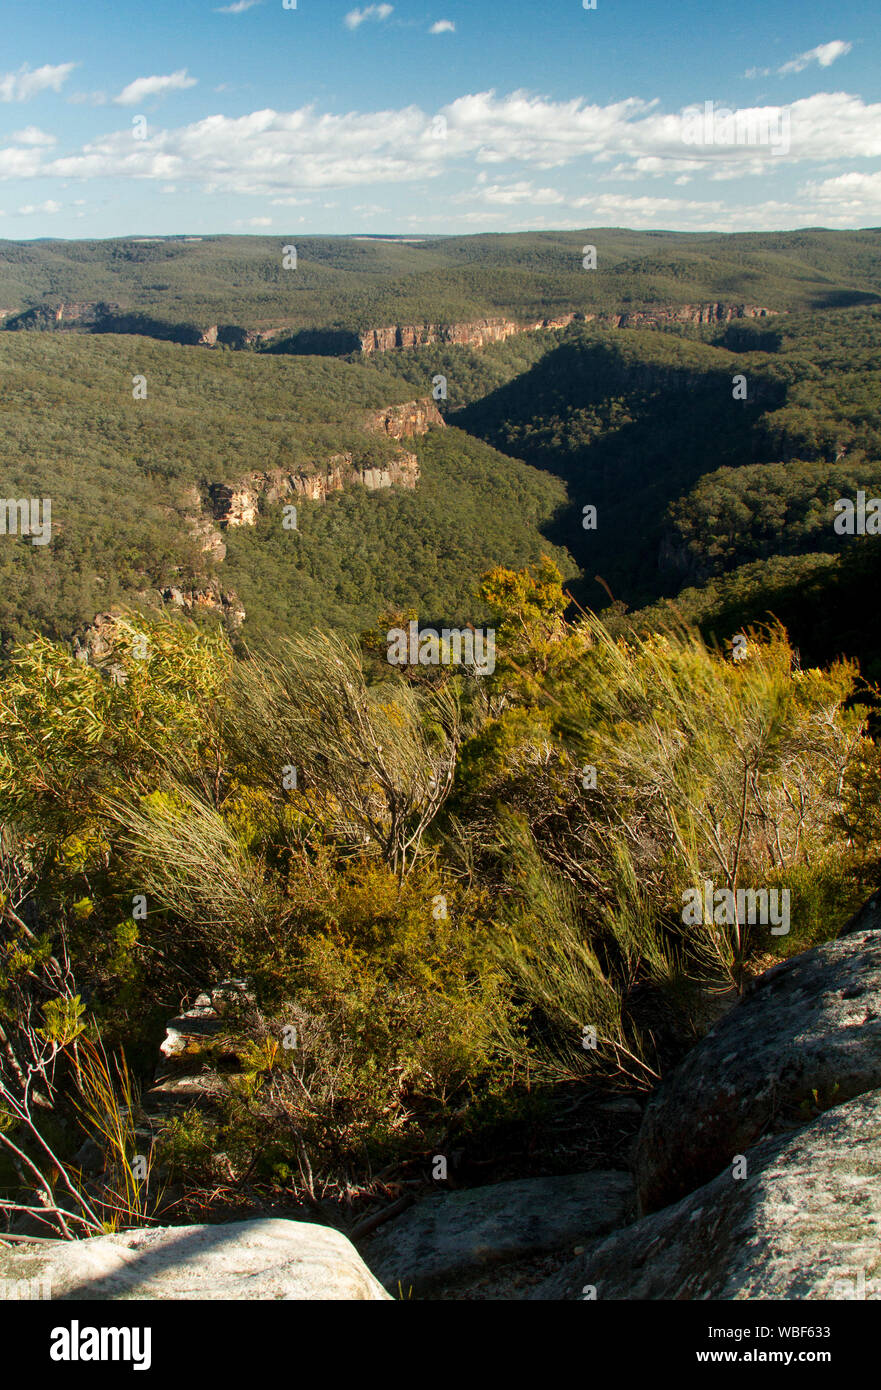 Vue imprenable sur paysage de collines boisées de Great Dividing Range rompu par gorges escarpées qui s'étend à l'horizon lointain et ciel bleu , NSW Australie Banque D'Images